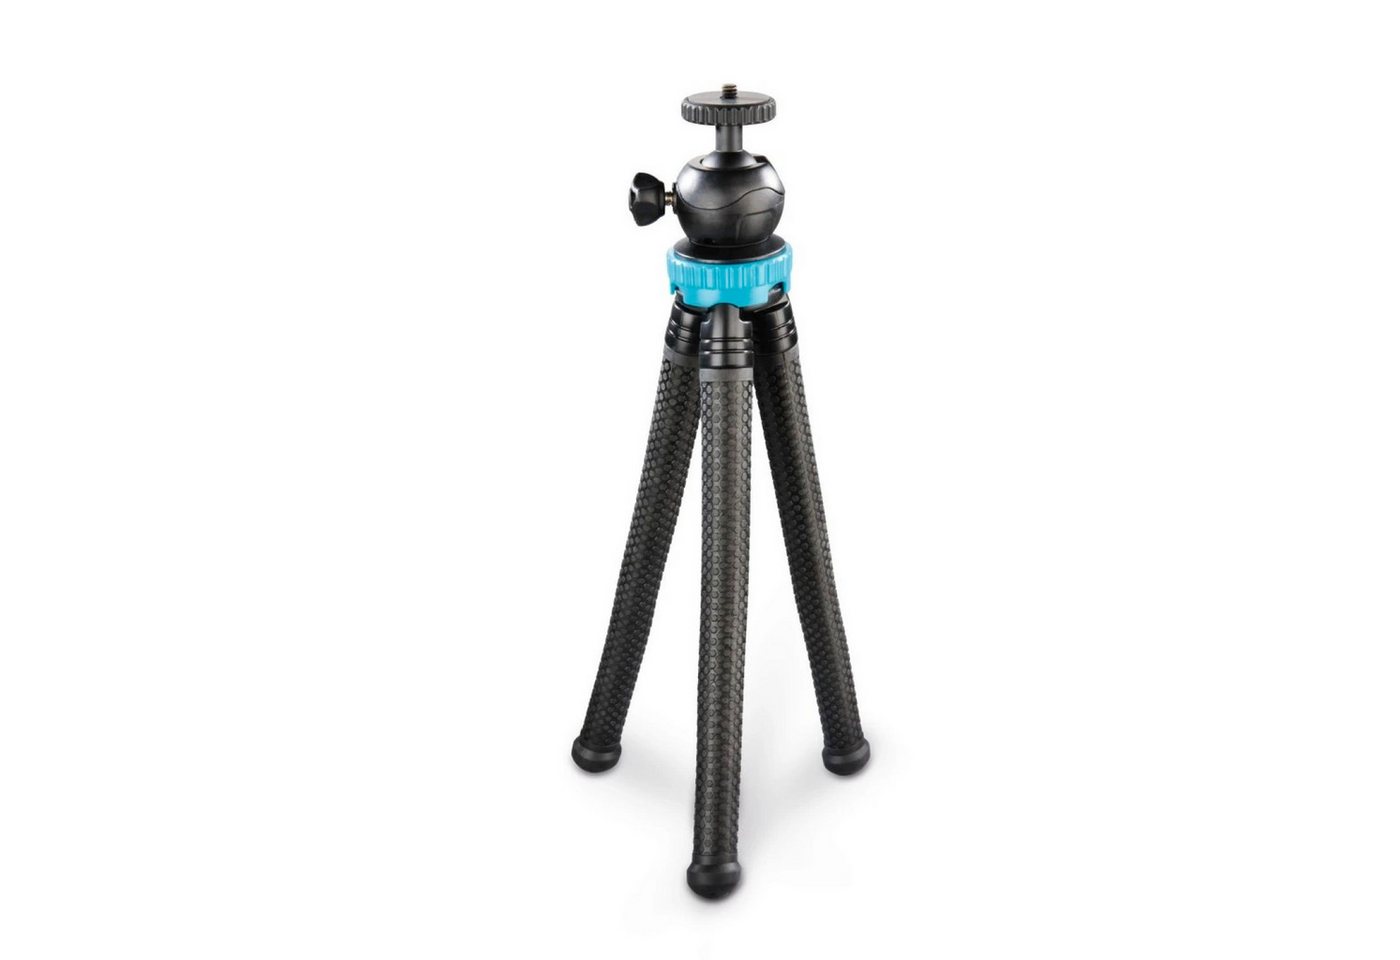 Hama Flex-Pro Flexibles Mini-Stativ 27cm Tripod Kamerastativ (Beine mit 360°-Biegung Smartphone-Halterung für Kamera Handy GoPro) von Hama